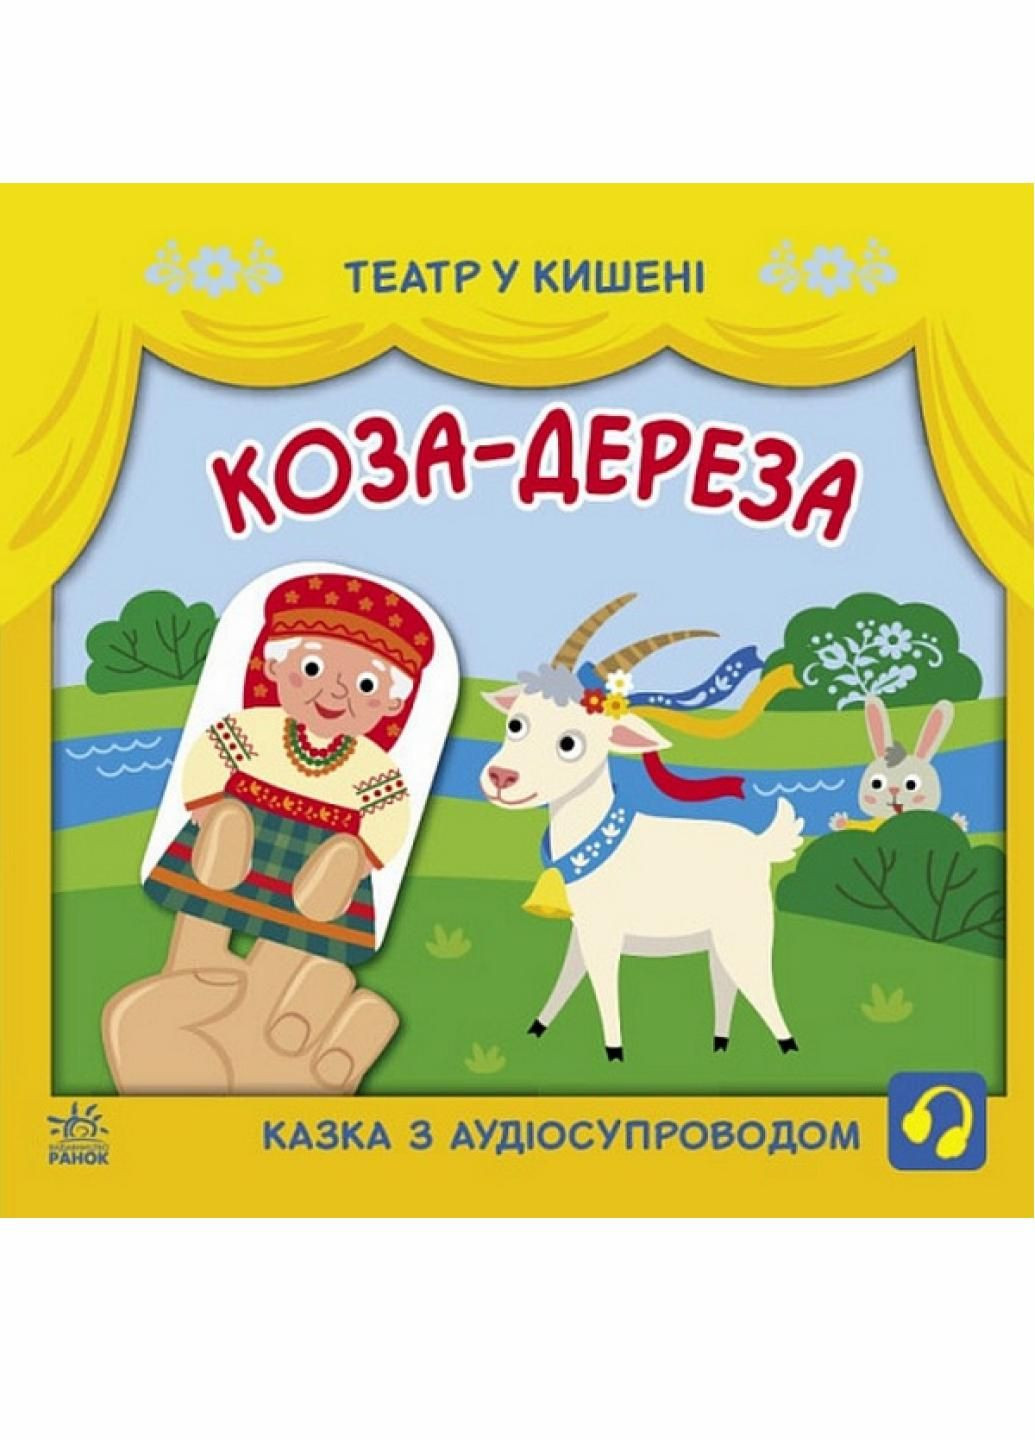 Книга Театр в кармане : Коза-дереза. Автор Моисеенко С. G1719006У 9786170980779 РАНОК (293343359)